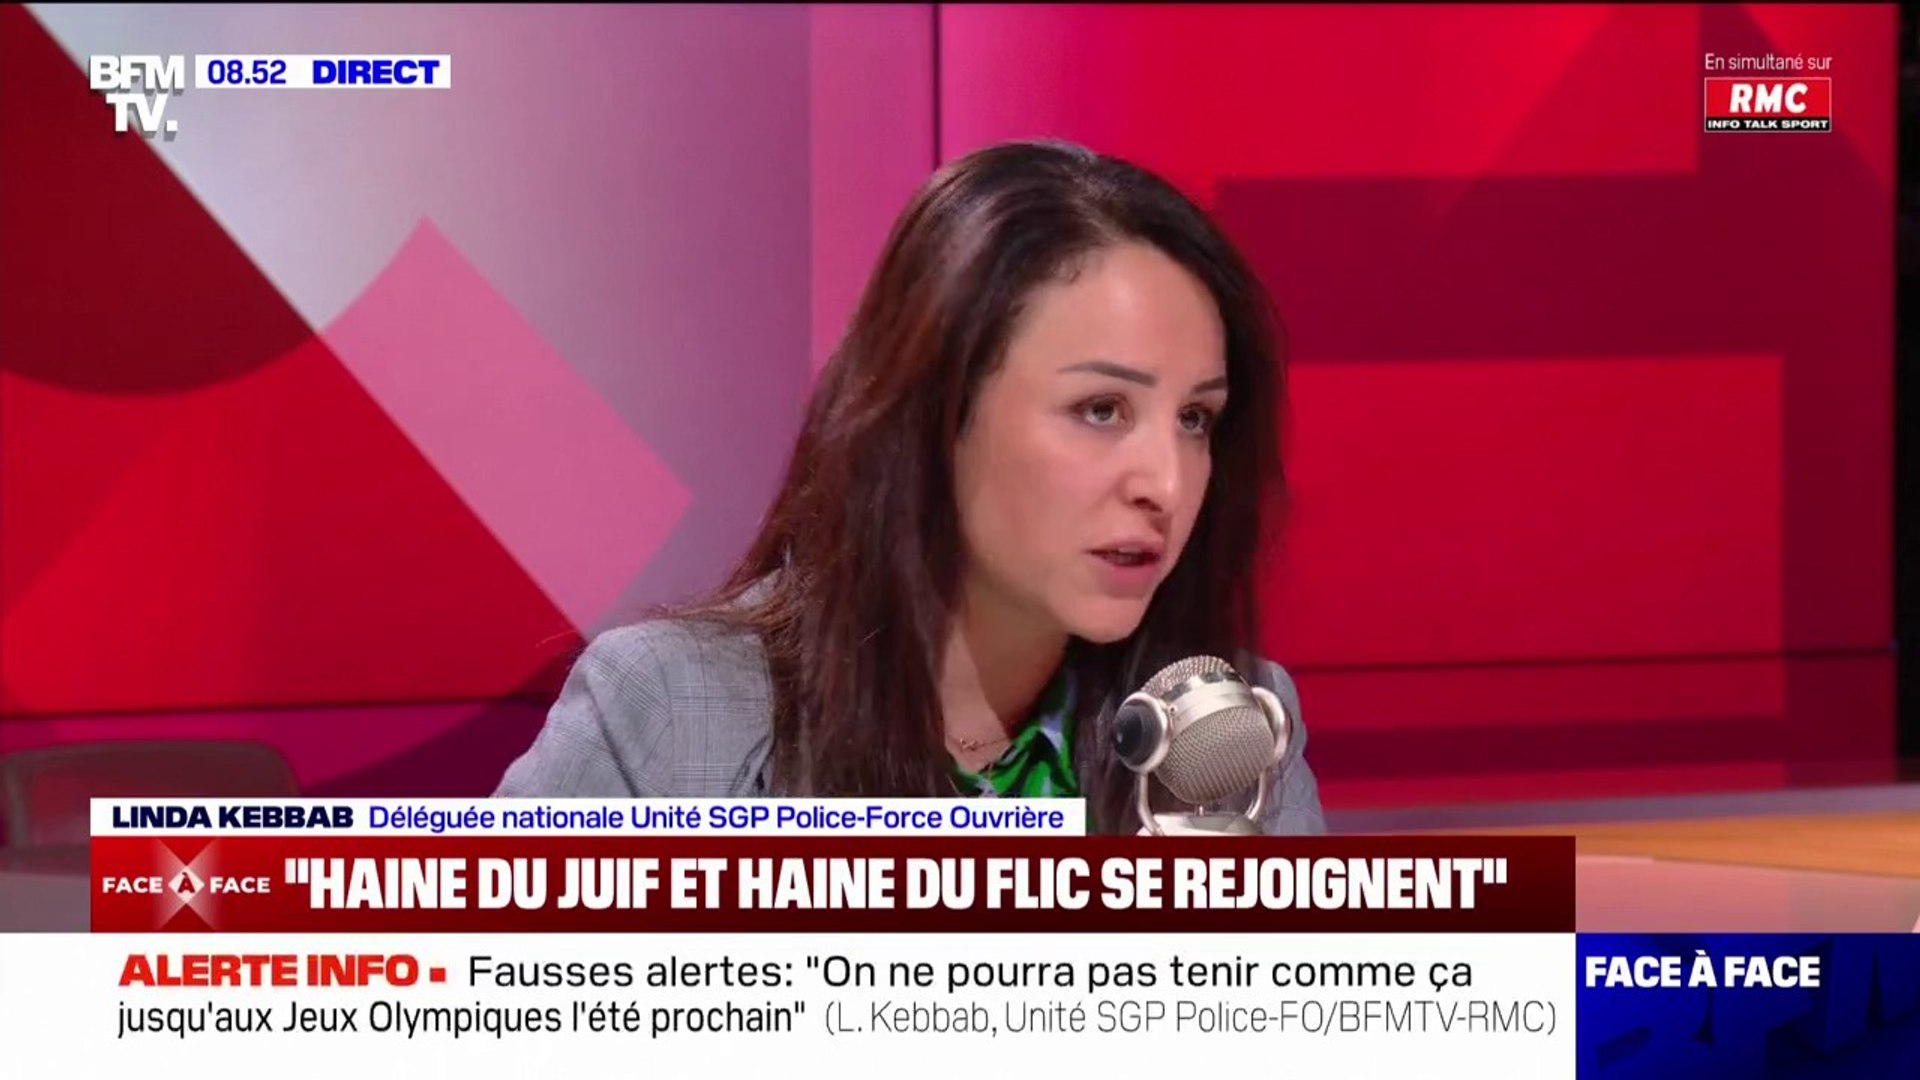 Linda Kebbab (Unité SGP Police-Force Ouvrière) accuse la France insoumise  "d'incitation à la haine" envers les policiers - Vidéo Dailymotion